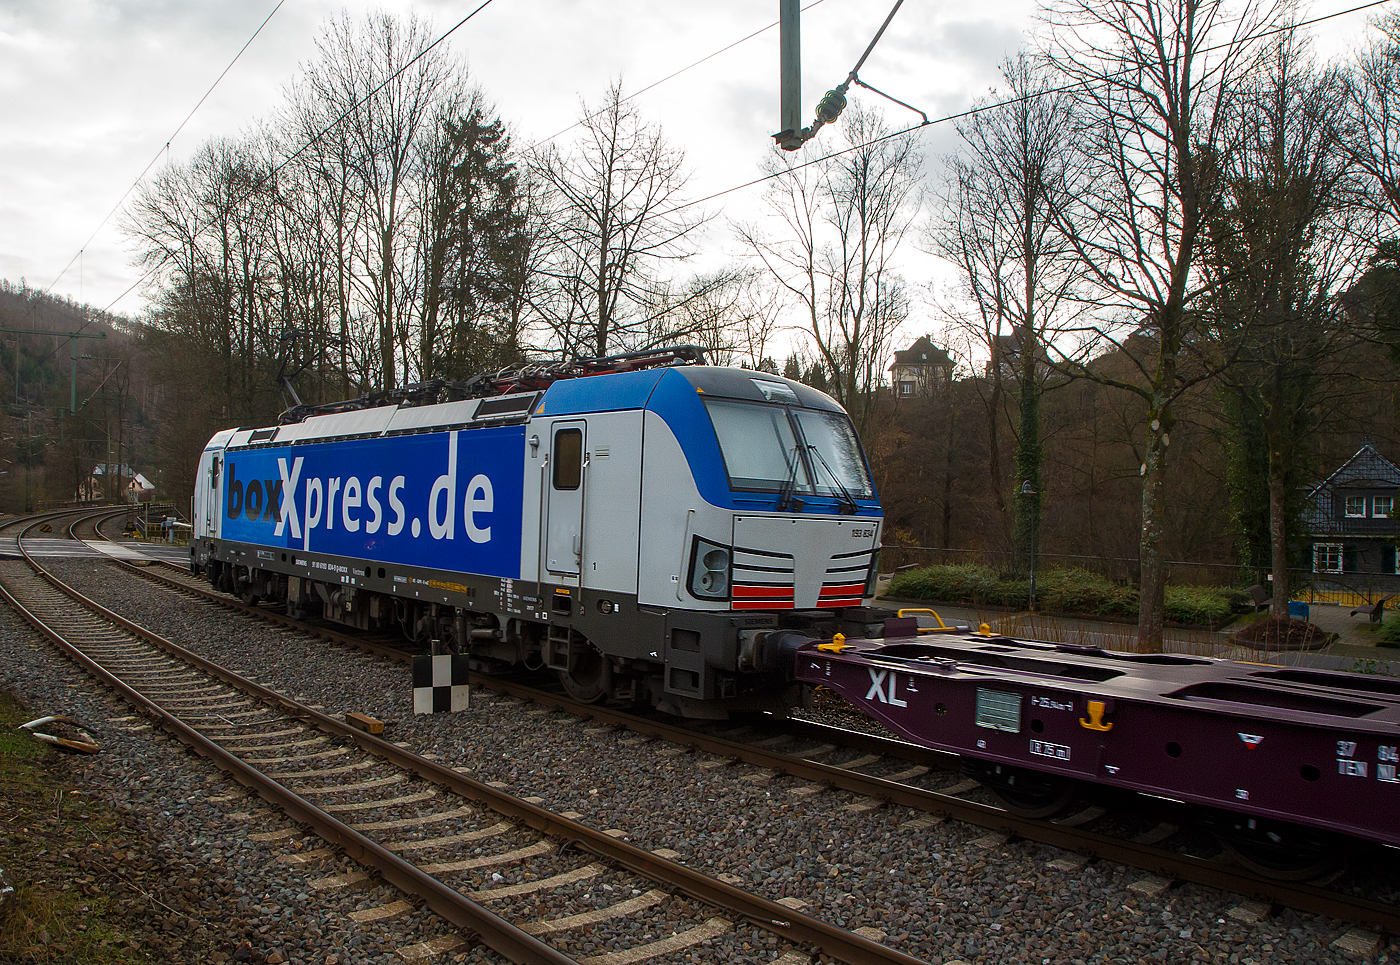 Nochmal als Nachschuss....
Die 193 834-9 (91 80 6193 834-9 D-BOXX) der boxXpress.de GmbH (Hamburg) fährt am 02.12.2021 mit einem Containerzug durch Kirchen/Sieg in Richtung Köln. Der Containerzug bestand aus Containertragwagen der Gattung Sggnss-xl der RailRelease B.V. (Rotterdam).

Die SIEMENS Vectron MS (Leistung 6,4 MW), wurde 2017 von Siemens Mobilitiy in München-Allach unter der Fabriknummer 22264 gebaut und an die boxXpress.de geliefert. Sie hat die Zulassungen für Deutschland, Österreich, Italien, die Schweiz und die Niederlande (D, A, I, CH, NL). 